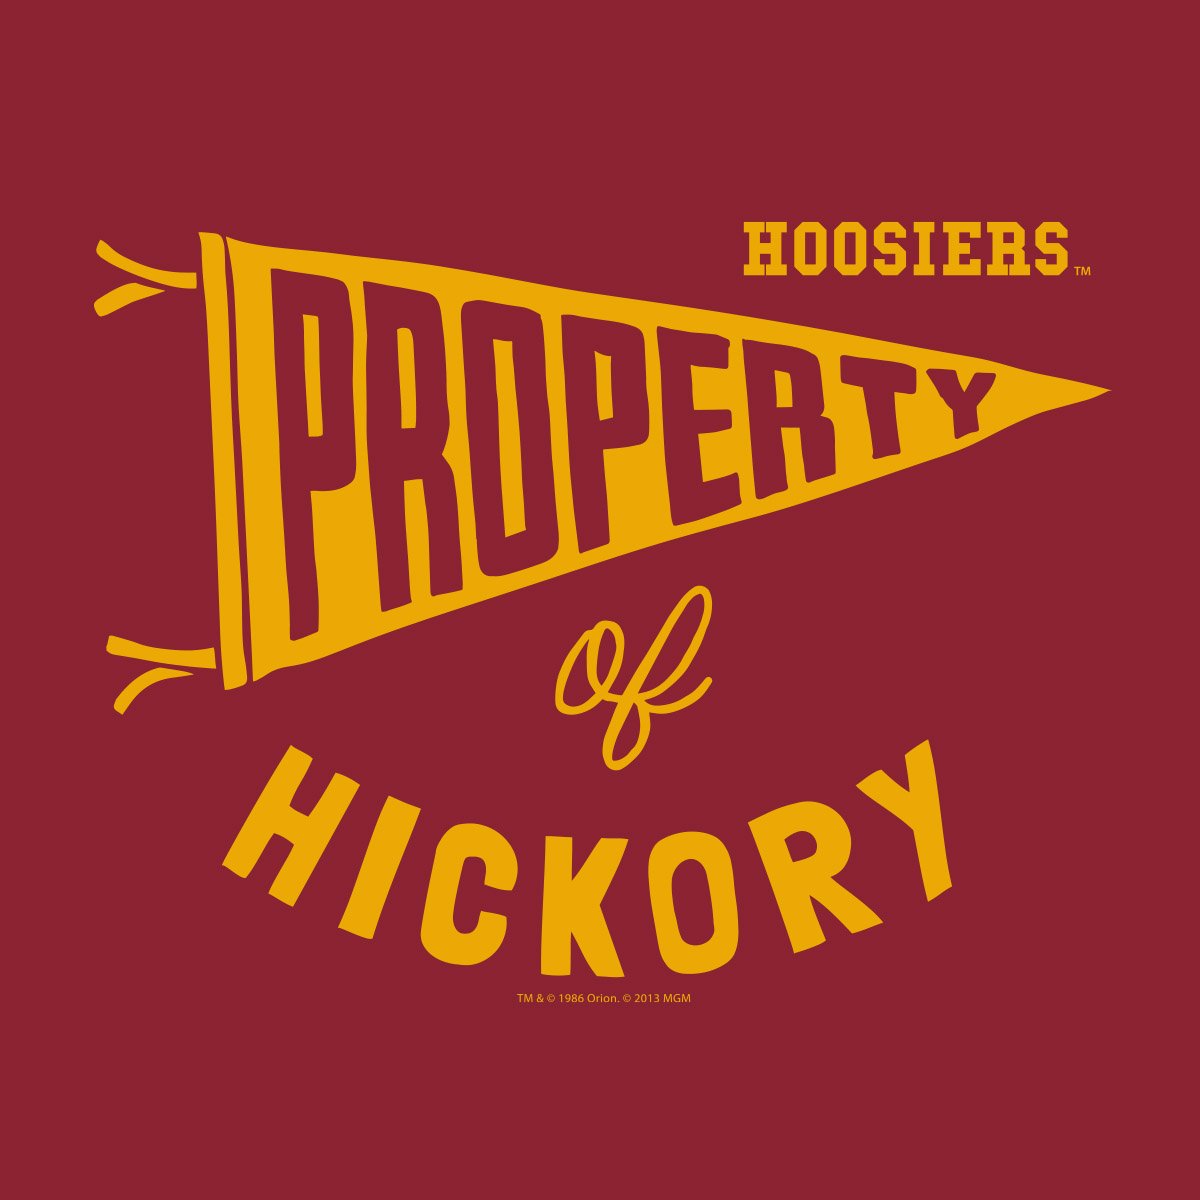 Hickory_Property.jpg